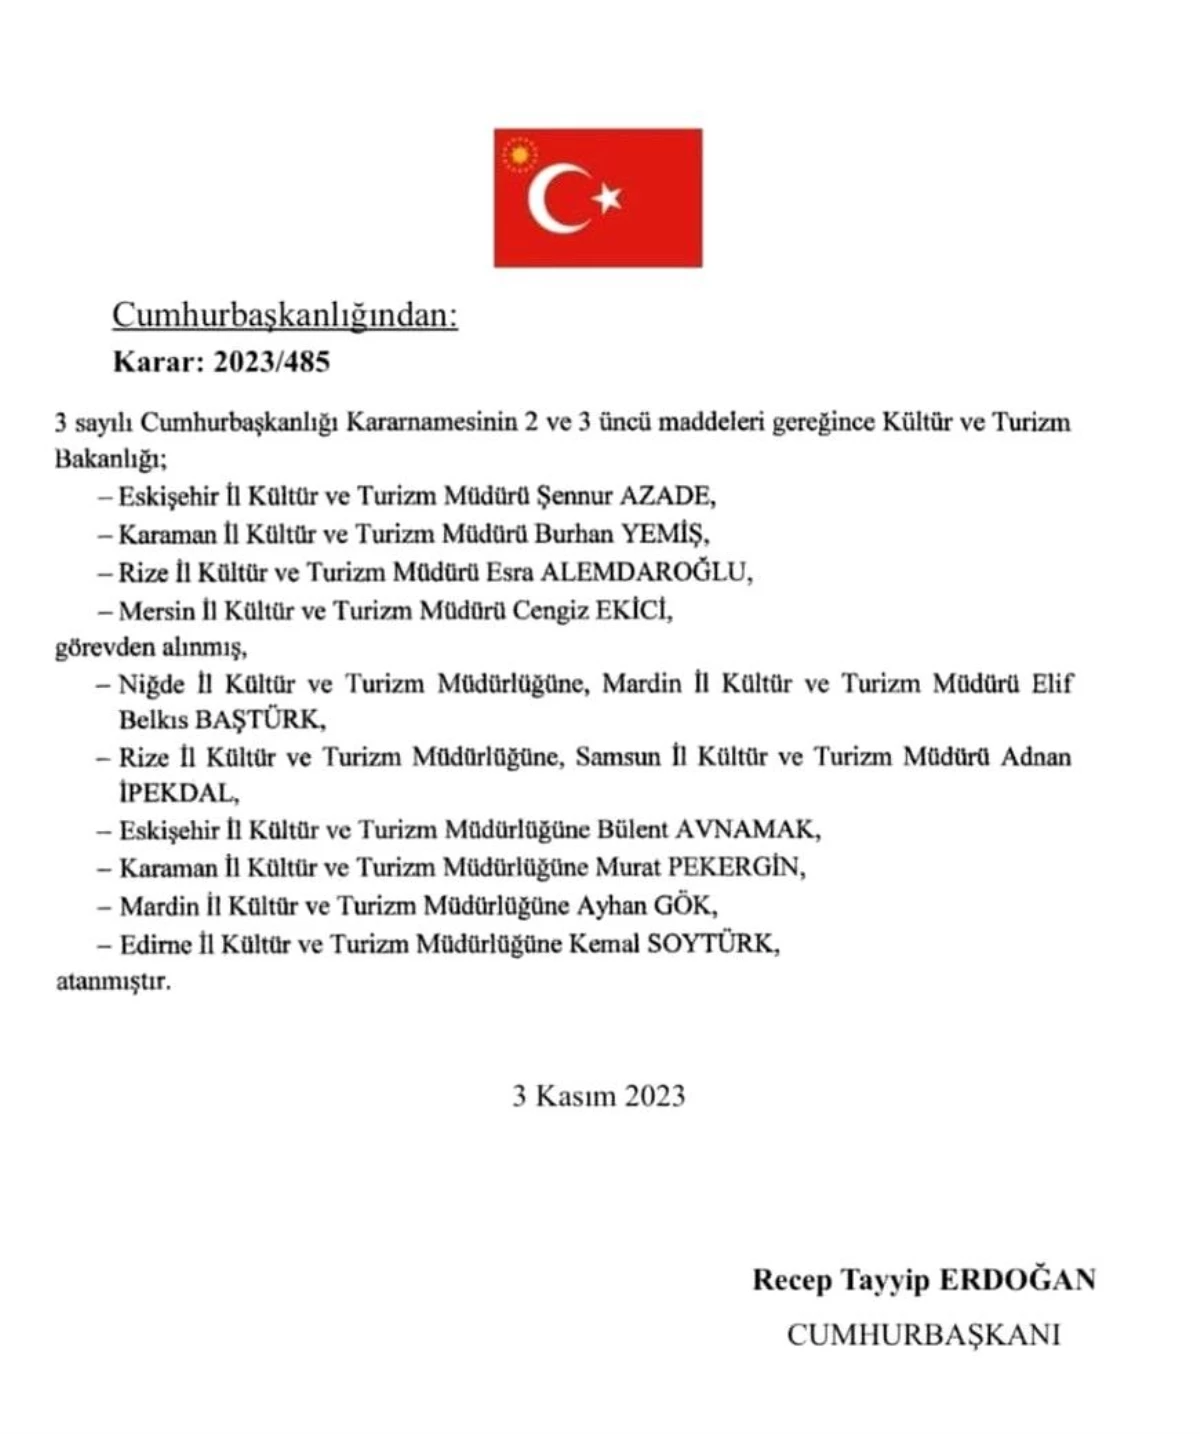 Samsun İl Kültür ve Turizm Müdürü İpekdal, Rize\'ye atandı